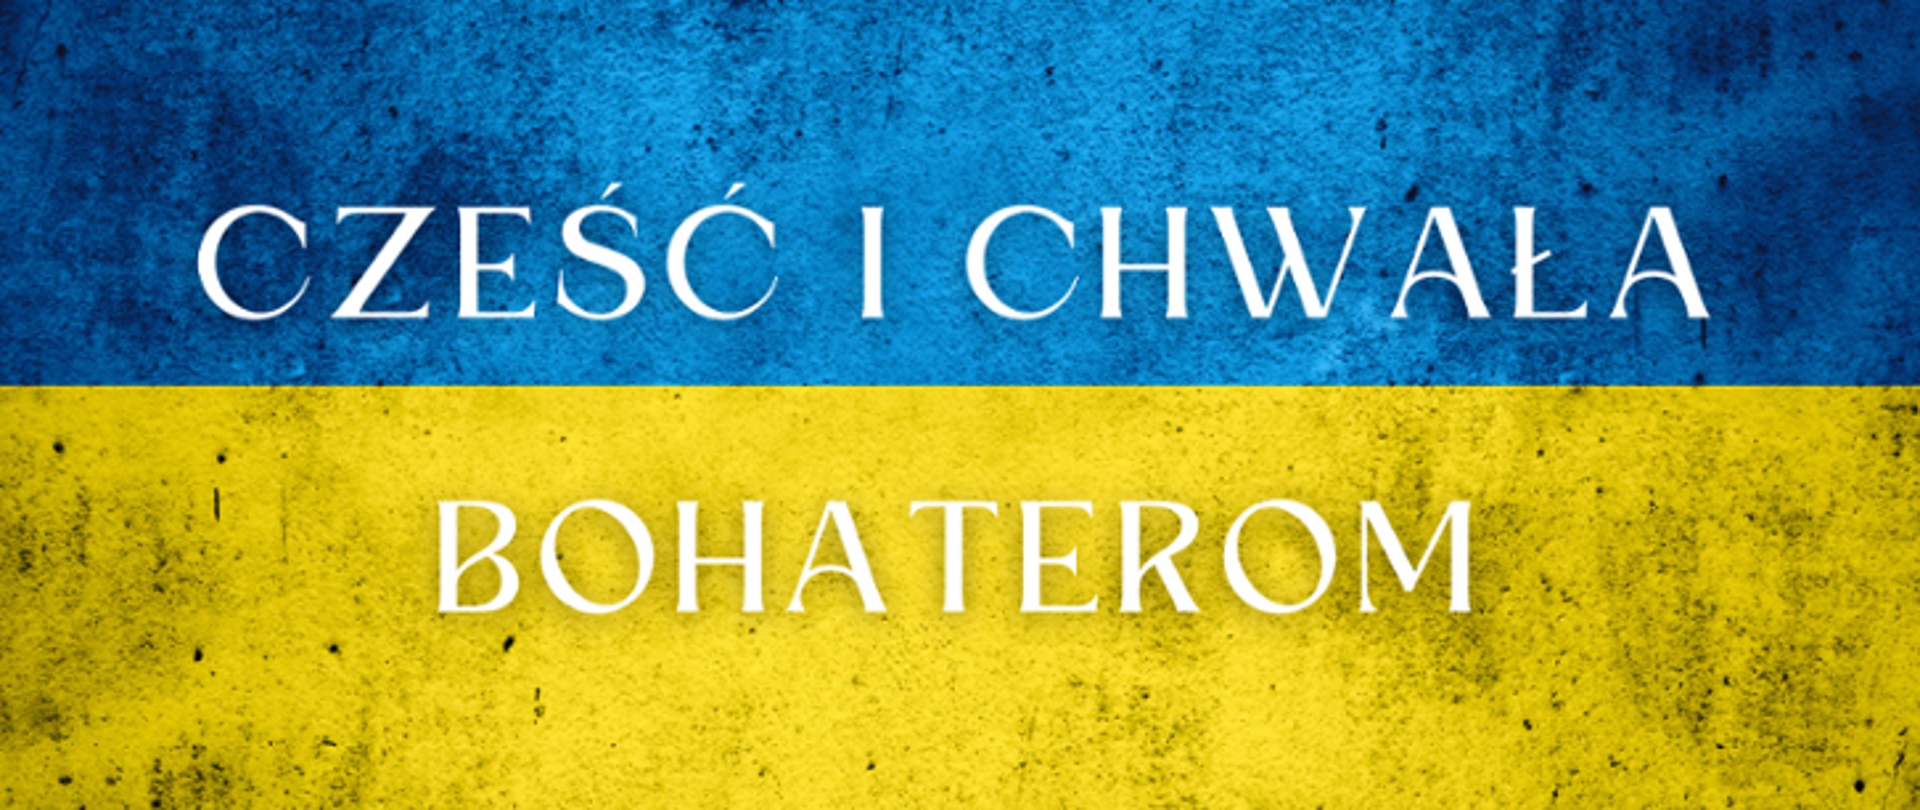 Ukrainska flaga, na niej napis Cześć i Chwała Bohaterom